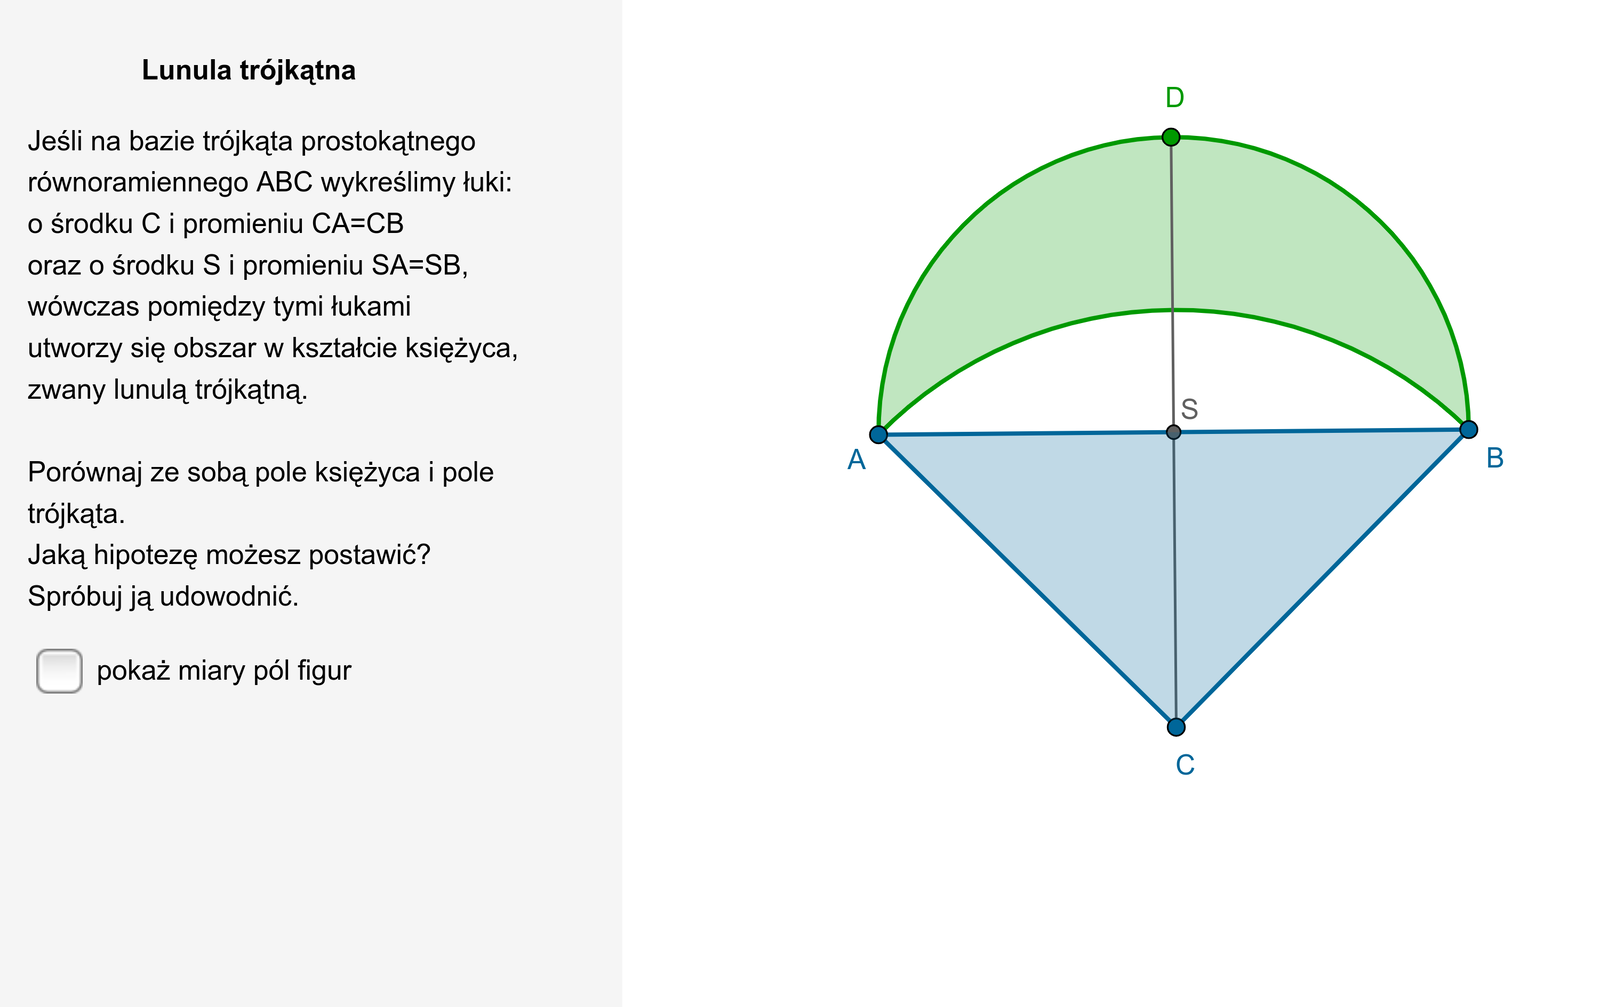   W aplecie przedstawiono rysunek lunuli trójkątnej. Na bazie trójkąta prostokątnego równoramiennego A B C zostały wykreślone dwa łuki. Pierwszy łuk o środku w punkcie C i promieniu CA równym CB ora drugi łuk o środku w punkcie S, gdzie S jest środkiem przeciwprostokątnej A B i promieniu SA równym SB. Wówczas obszar pomiędzy tymi łukami przypominający kształtem księżyc zwany jest lunulą trójkątną. Obok rysunku znajduje się możliwość pokazania miar pól figur. Pole księżyca lunuli jest równe 11,98638400823, a pole trójkąta A B C jest równe tyle samo. Treść komentarza dotycząca miar pól figur jest następująca: Jaką hipotezę możesz postawić? Spróbuj ją udowodnić.